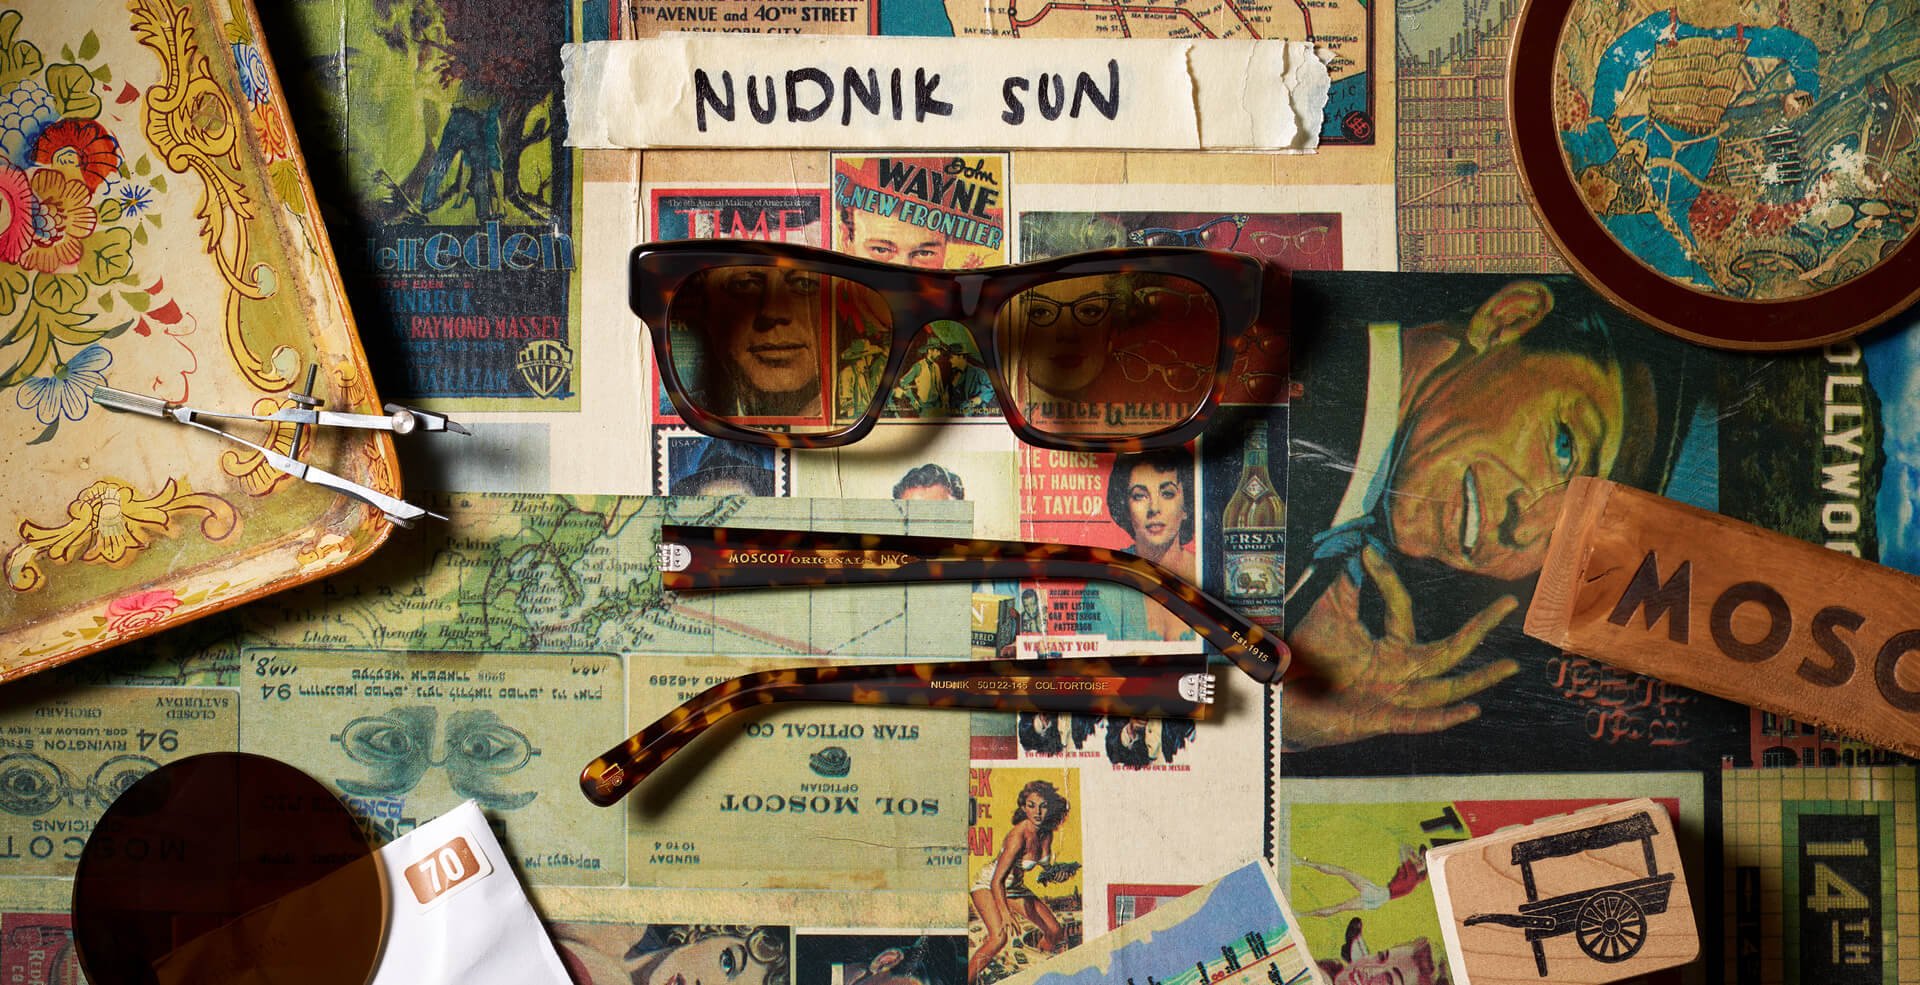 The NUDNIK SUN